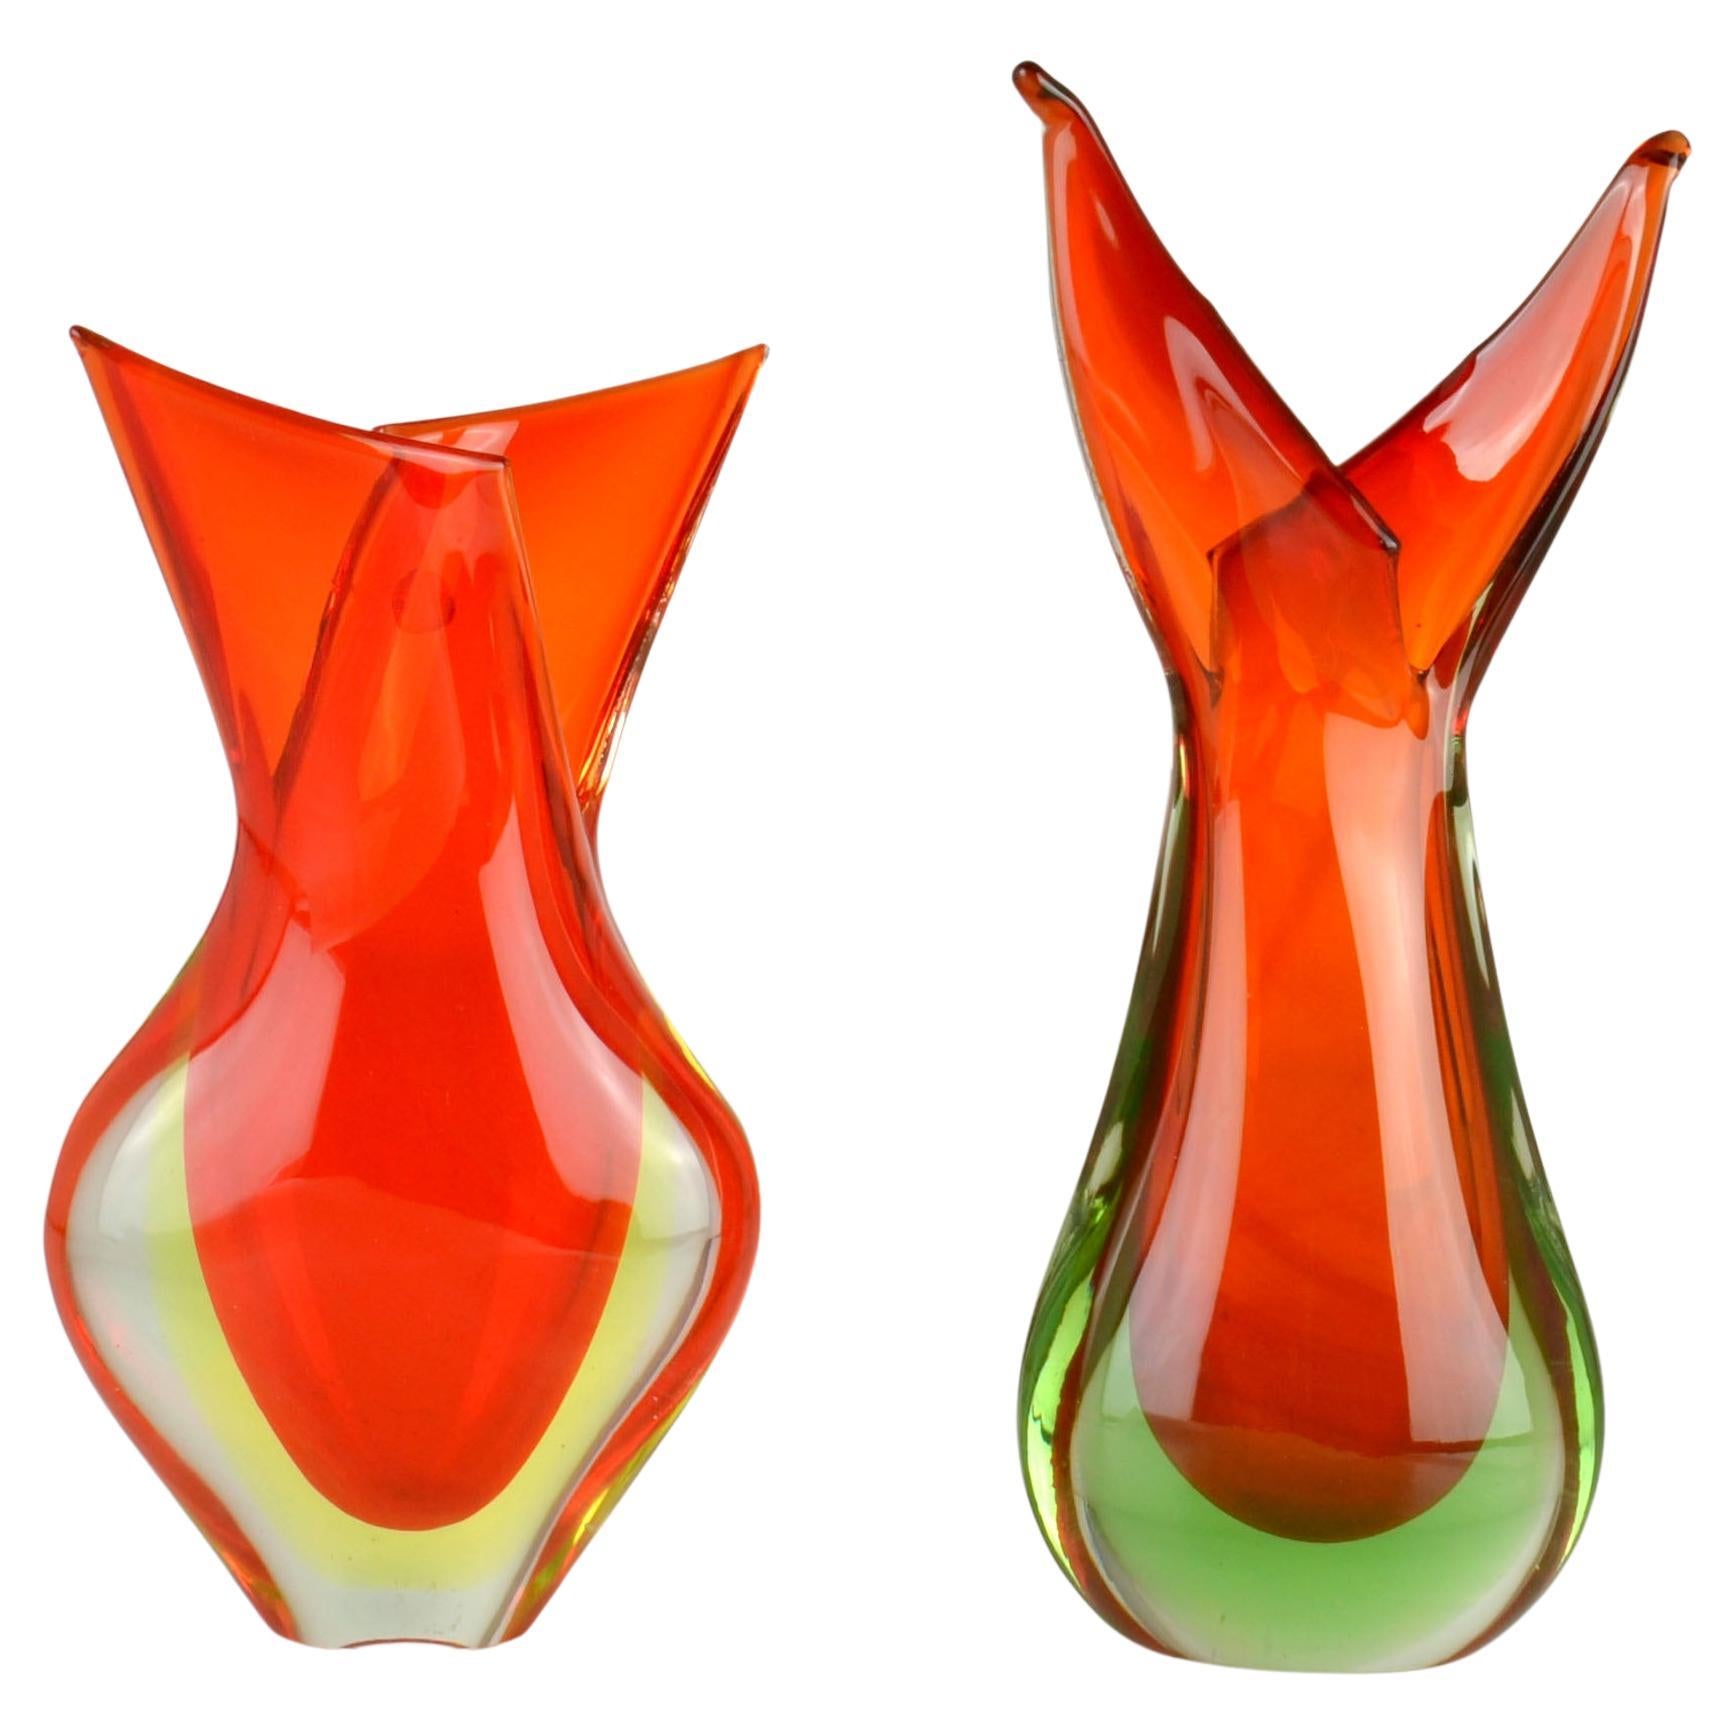 Glasvasen von Flavio Poli für Seguso aus den 1950er Jahren in feurigem Orange in Form einer Flamme, mundgeblasen, bekannt als venezianischer Sommerso, hergestellt in Murano, Venedig, Italien. 
Die Vasen sind eine Kombination aus orangefarbenem Glas,